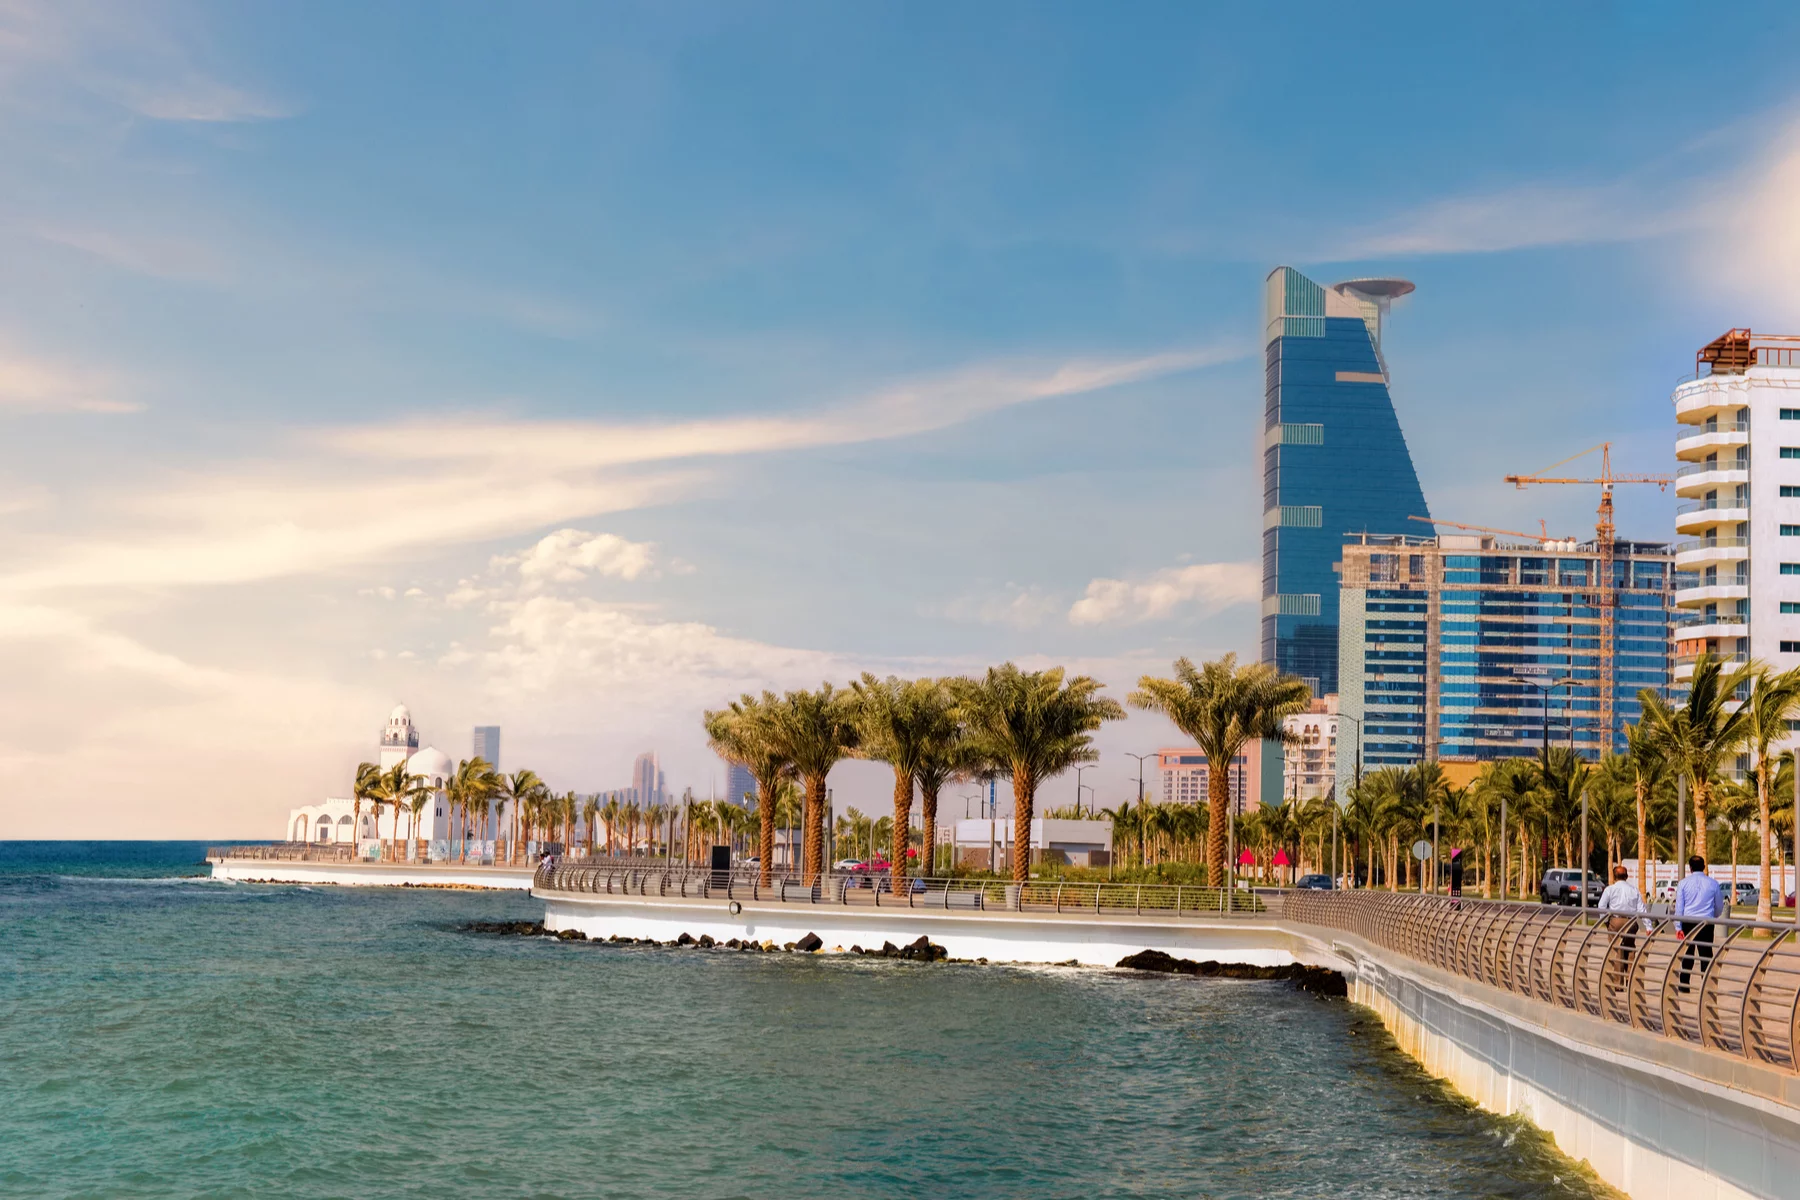 Jeddah coastline